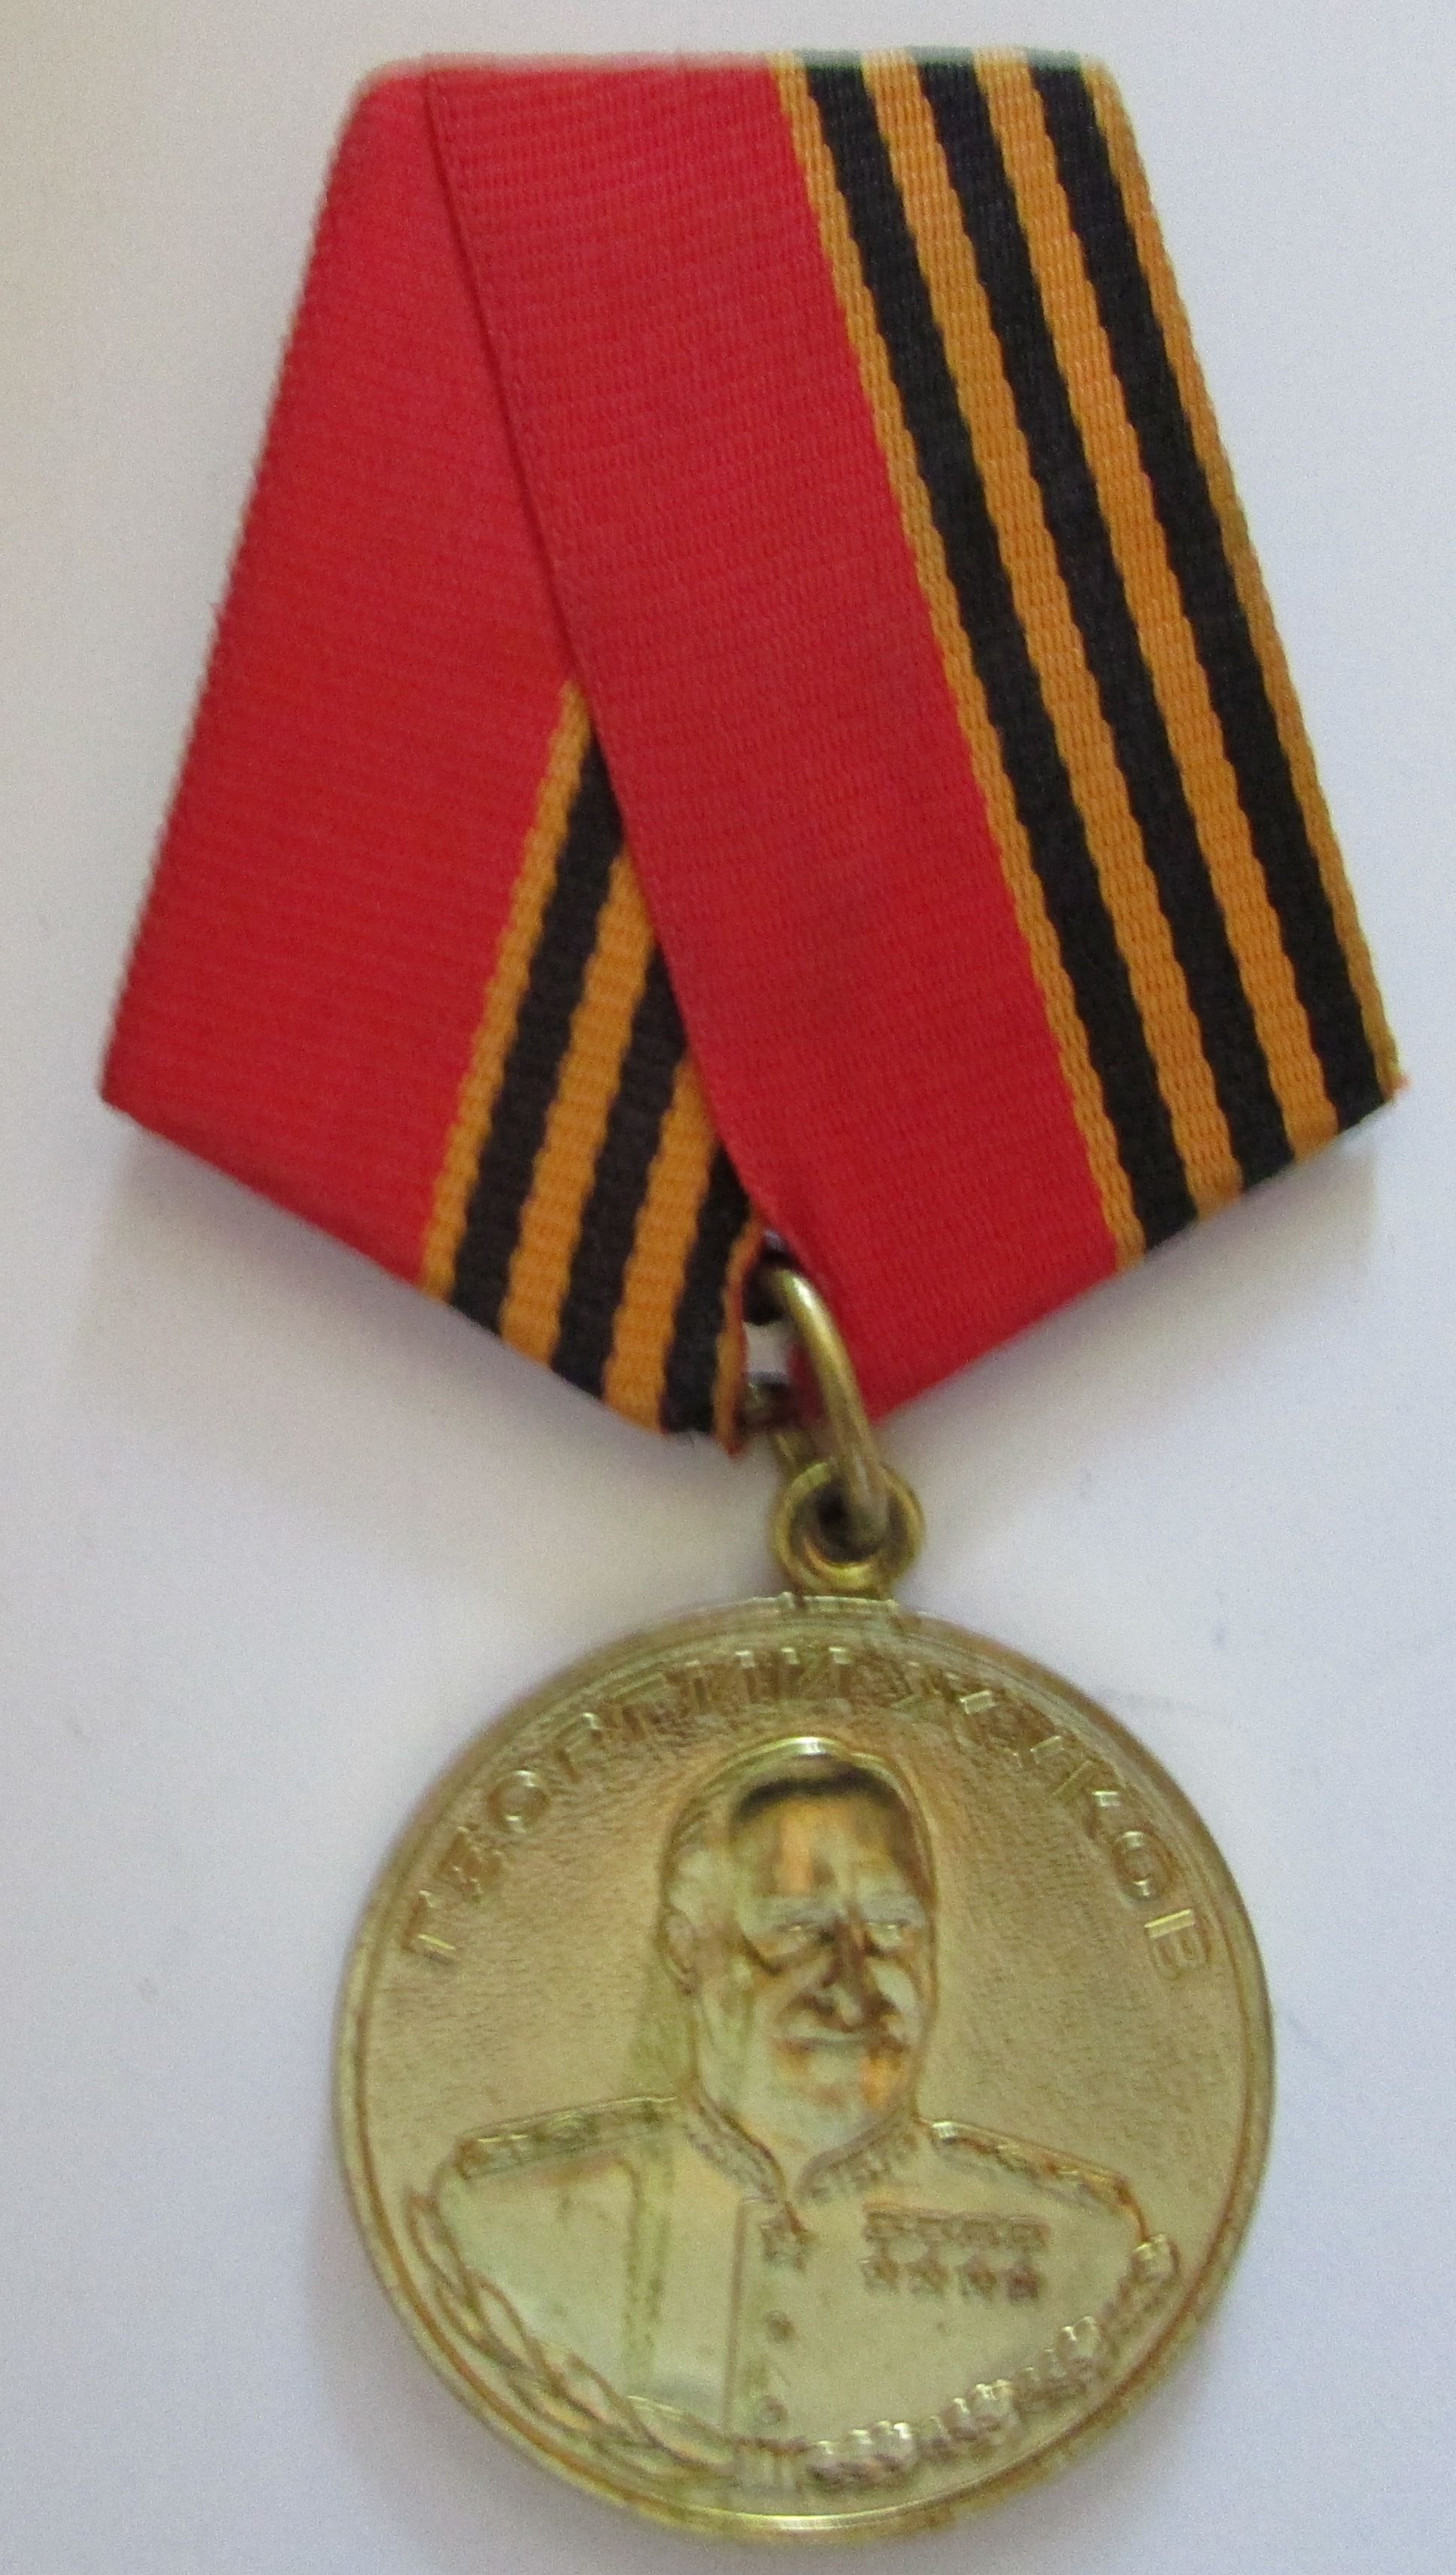 Ювілейна медаль нагрудна. "Георгий Жуков. 1896-1996"